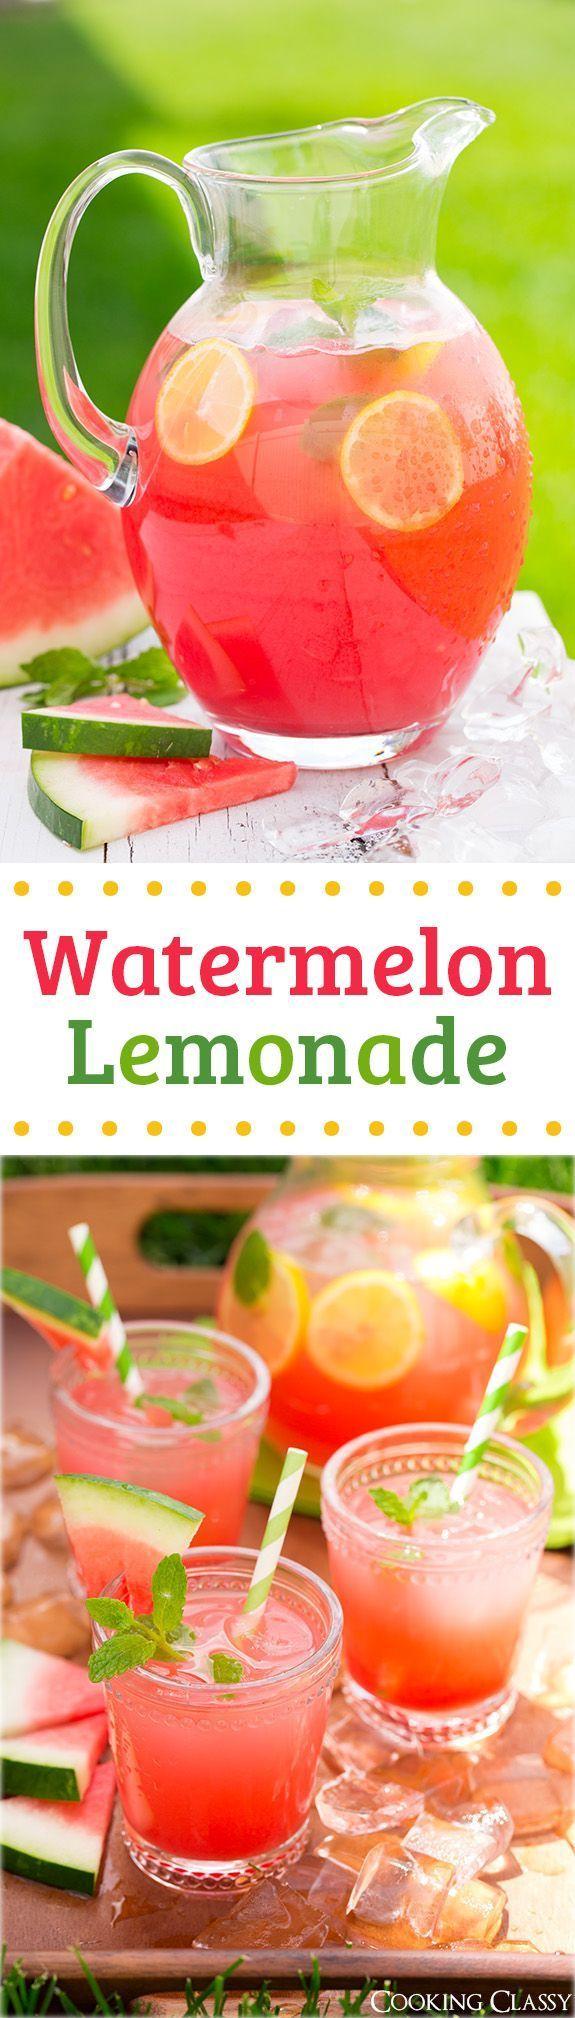 Hochzeit - Watermelon Lemonade